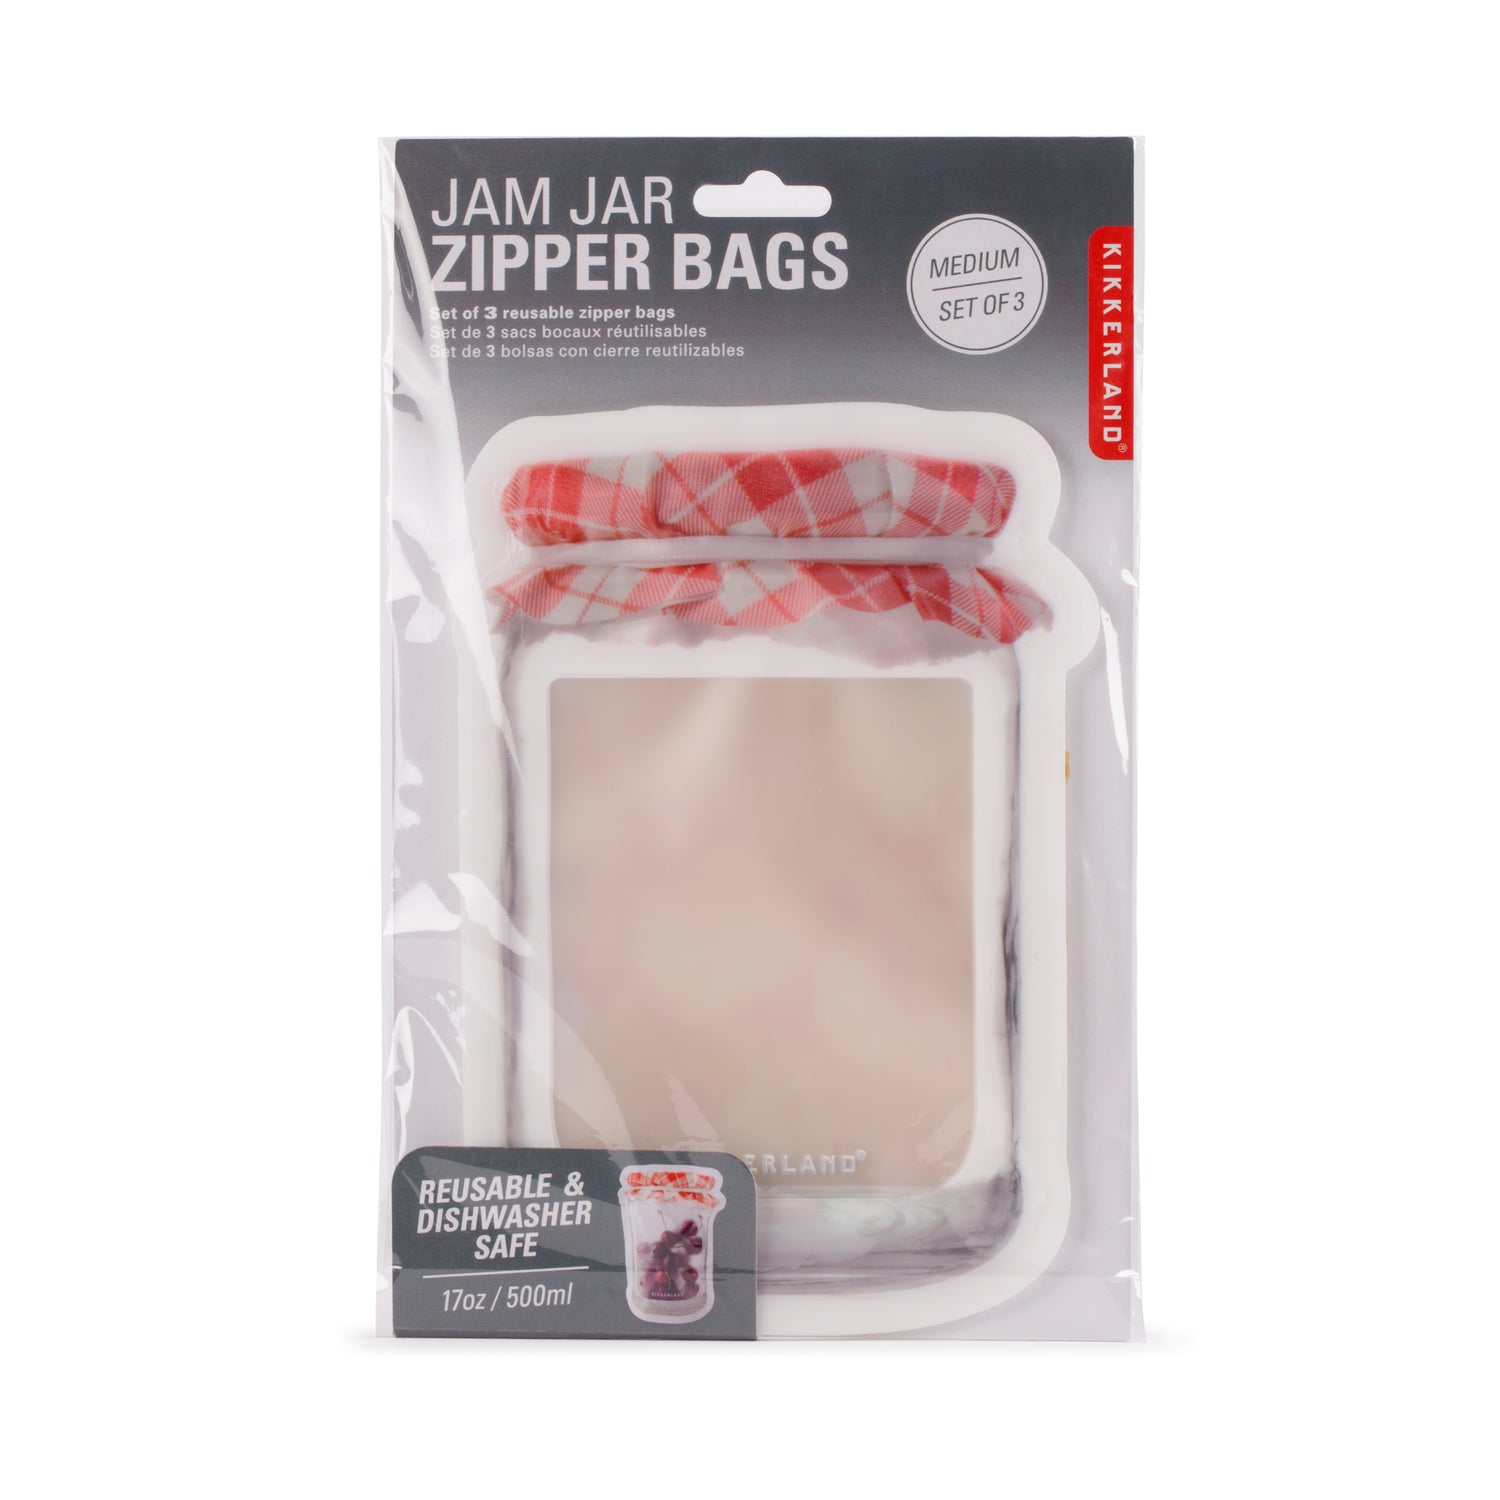 Jam Jar Zipper Bag Medium